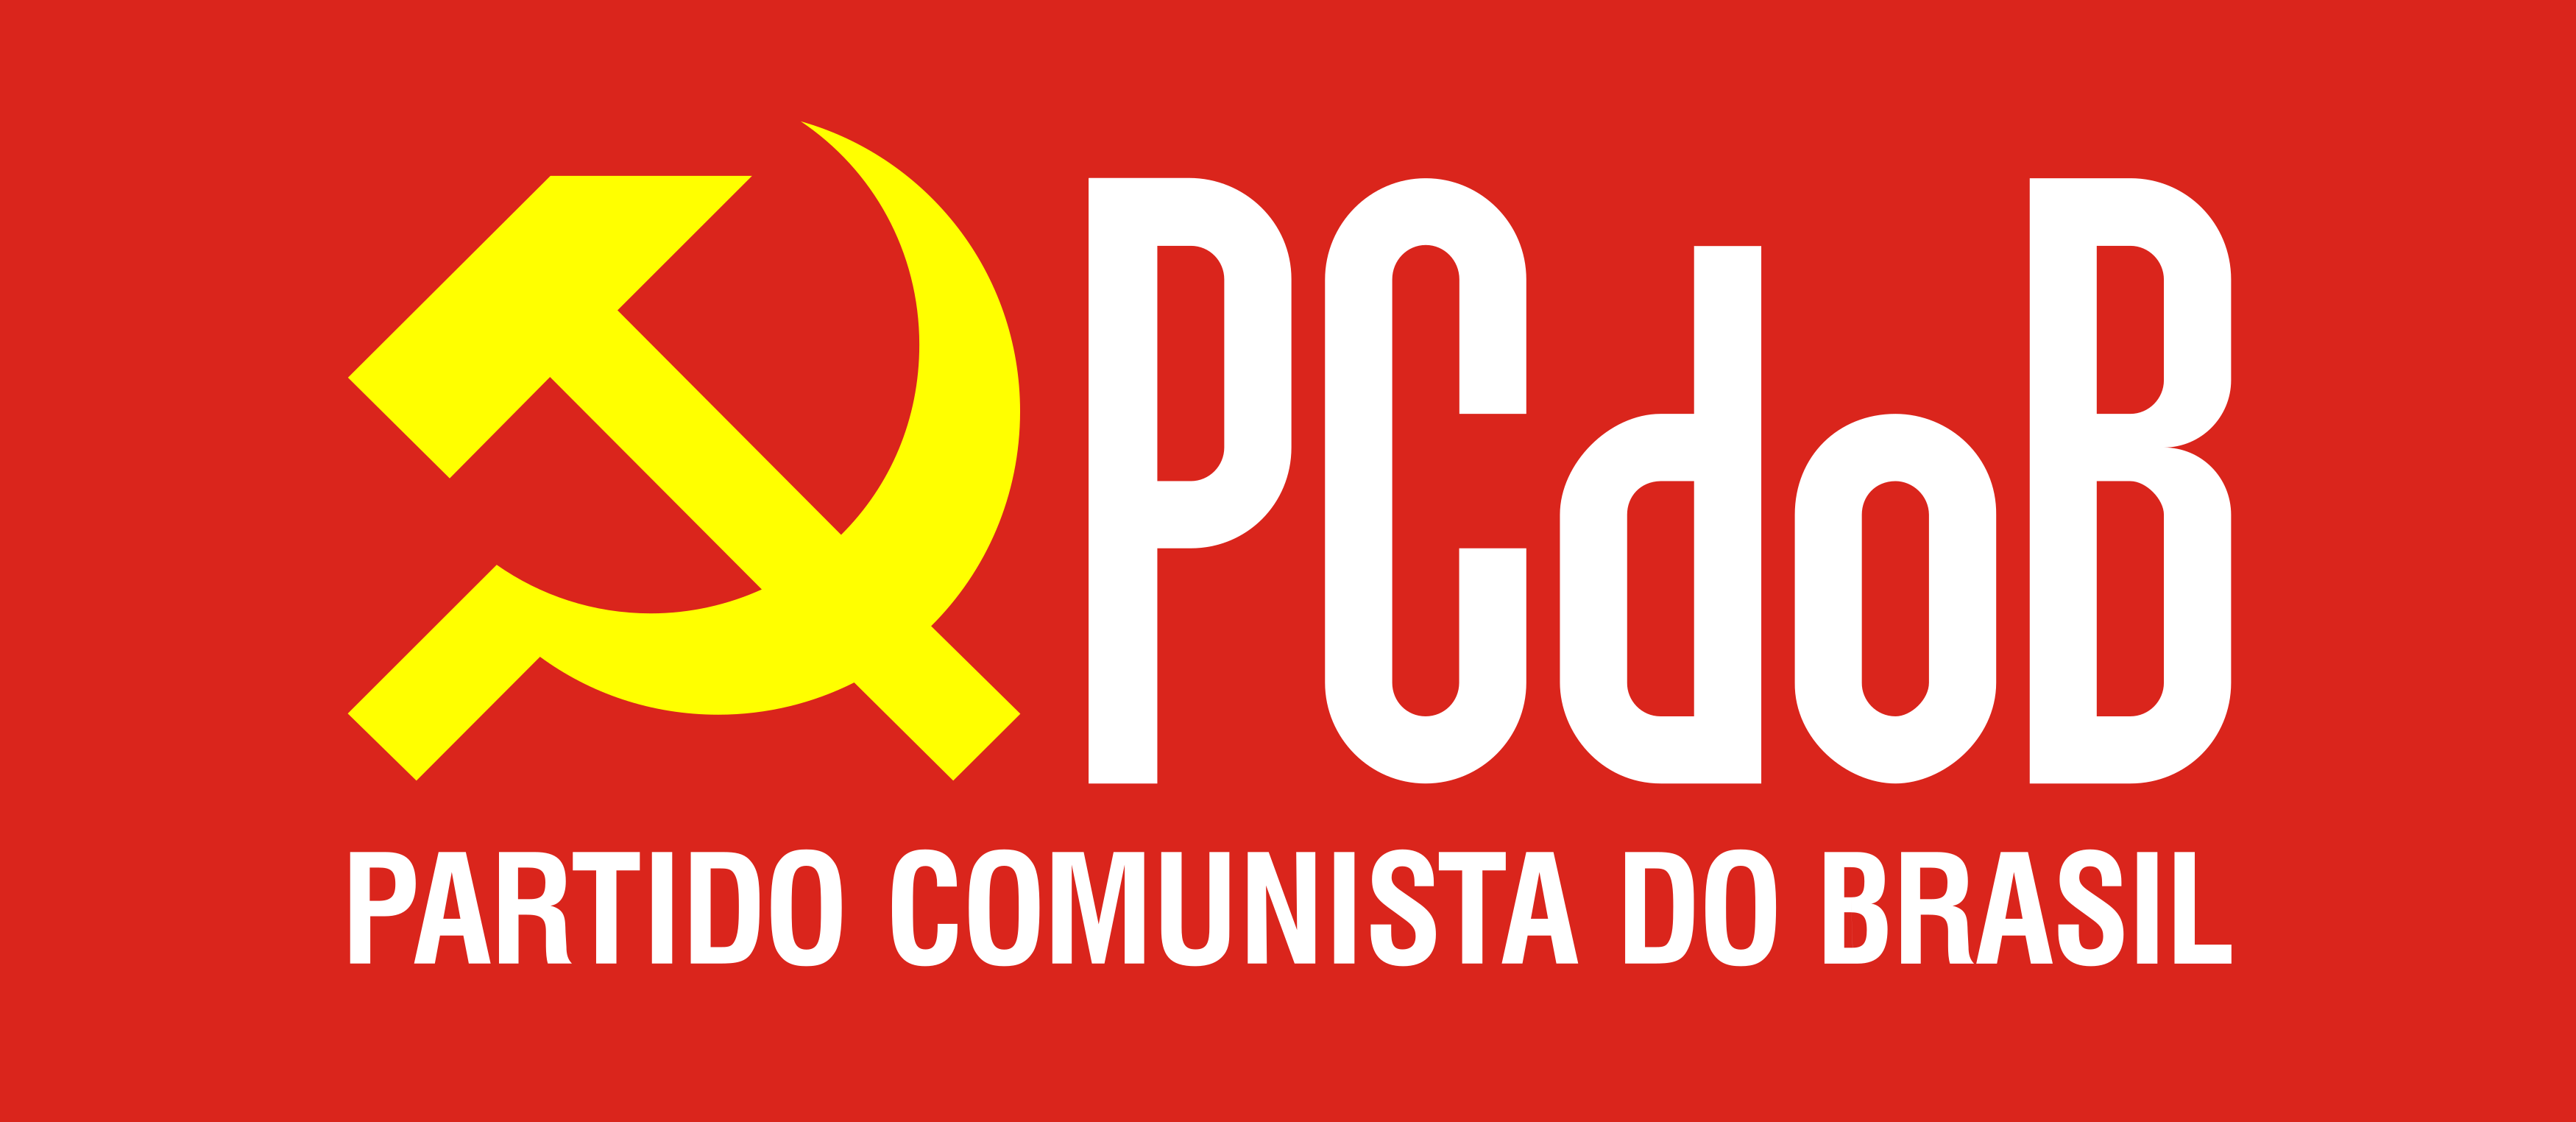 Pc do B Logo.